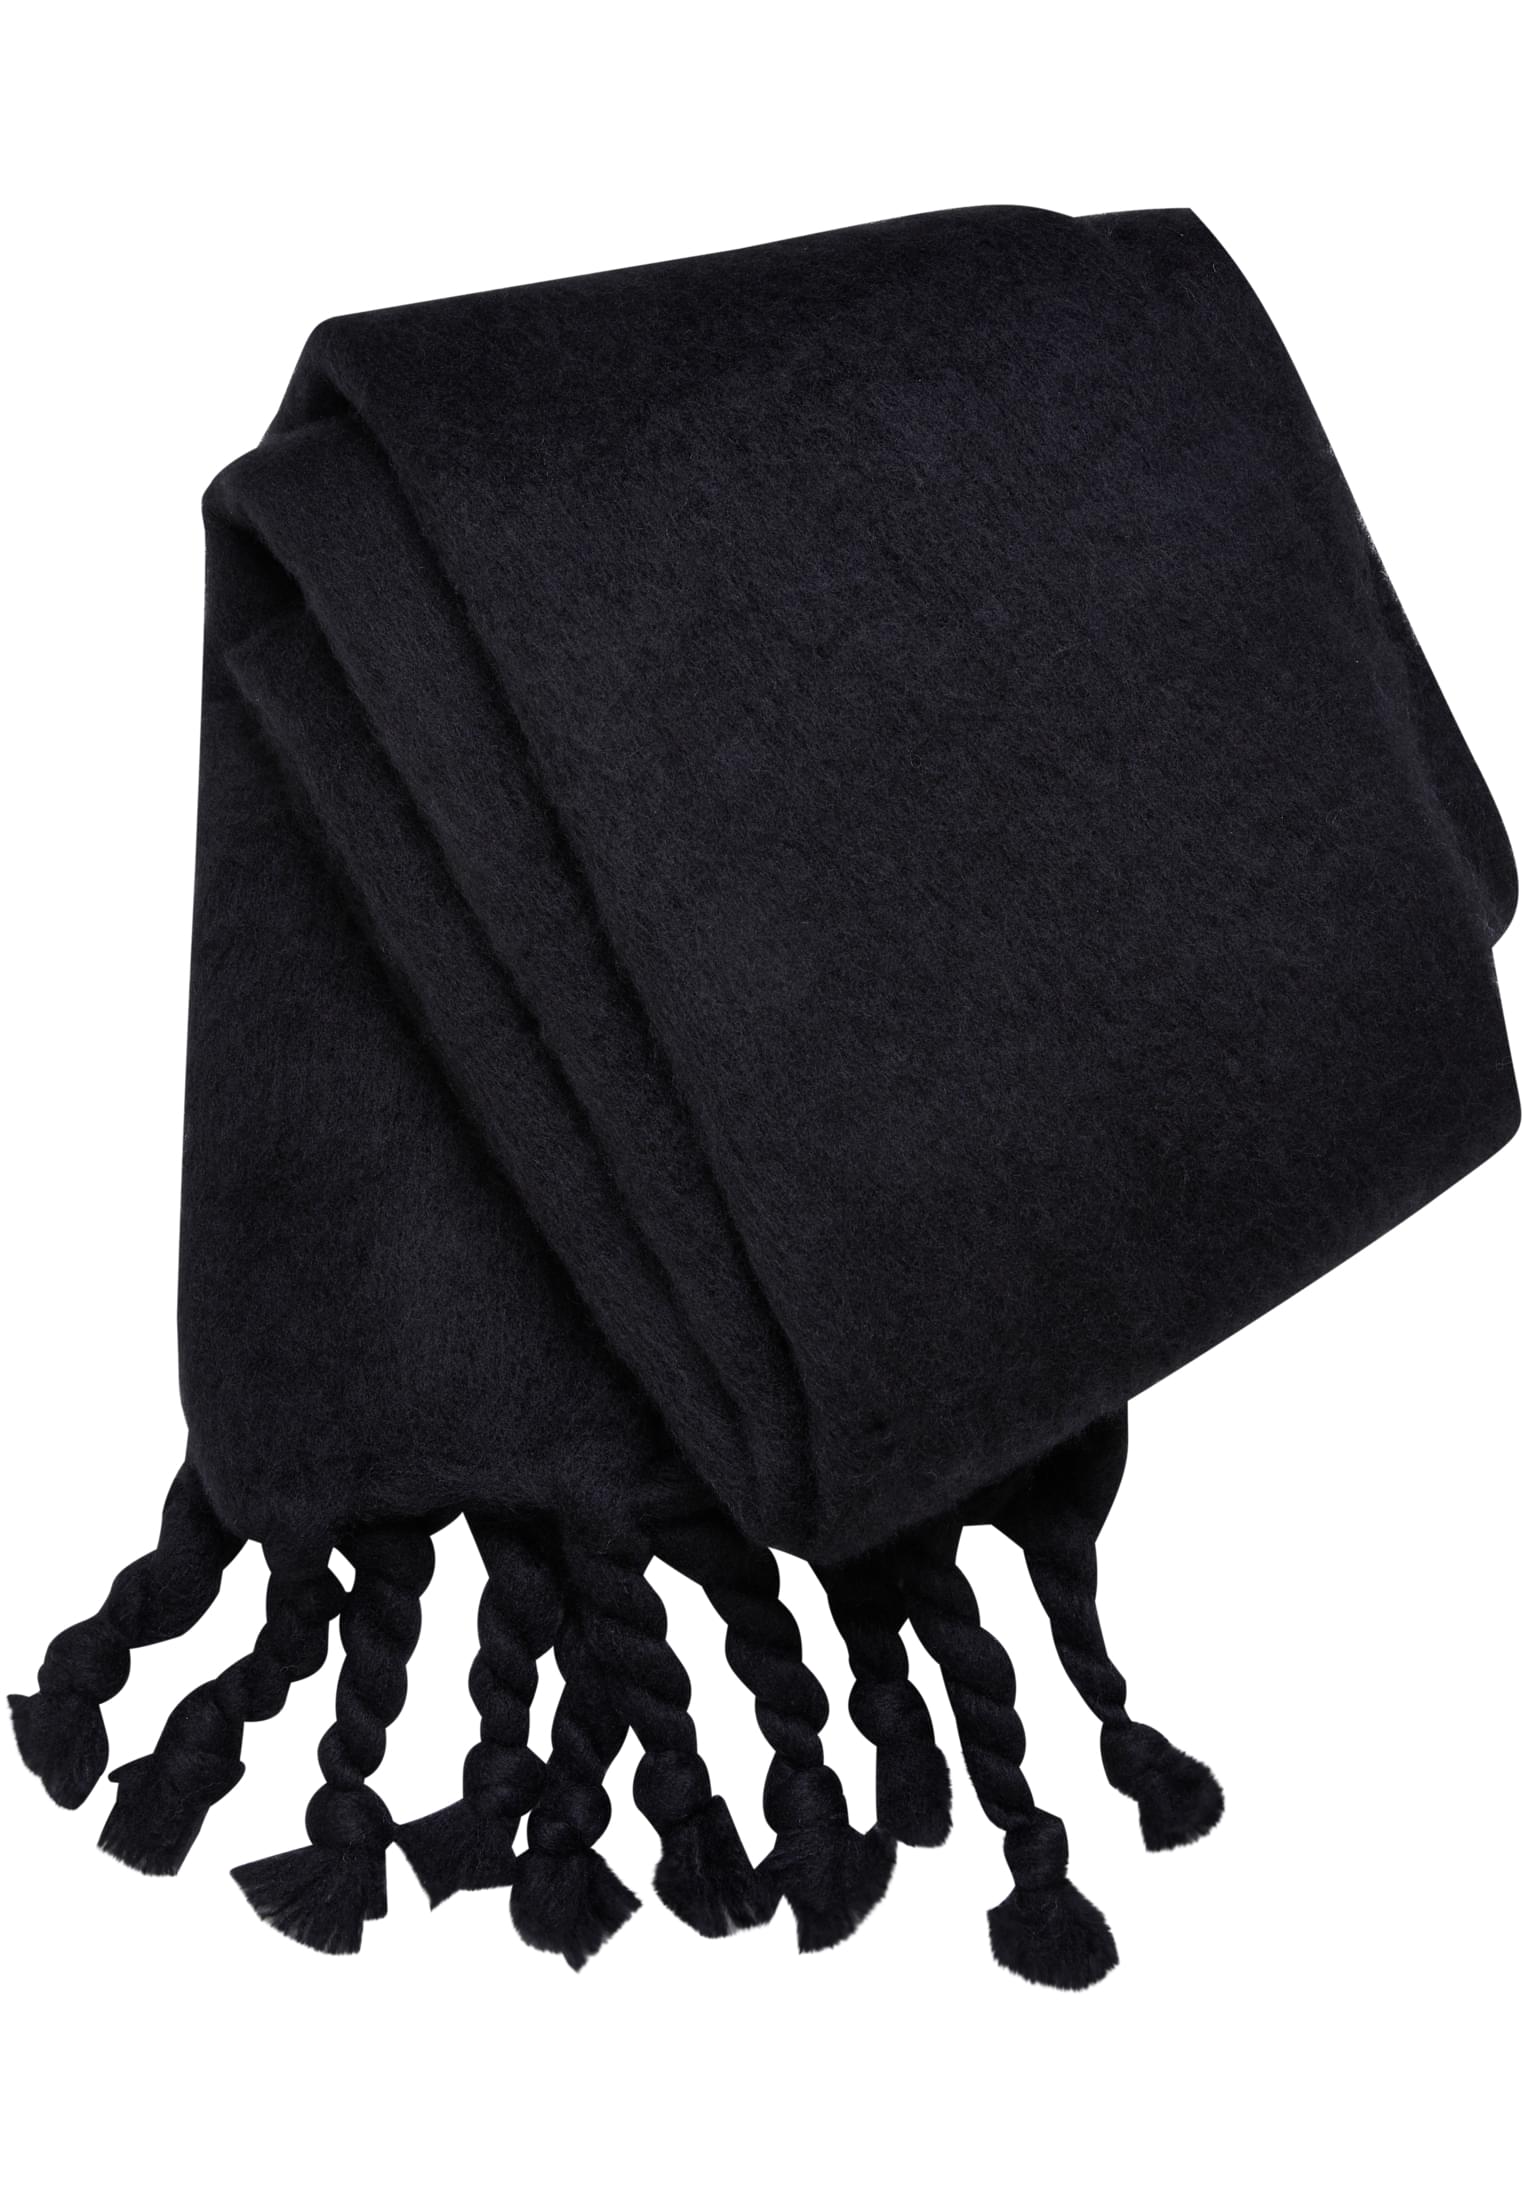 Big black scarf